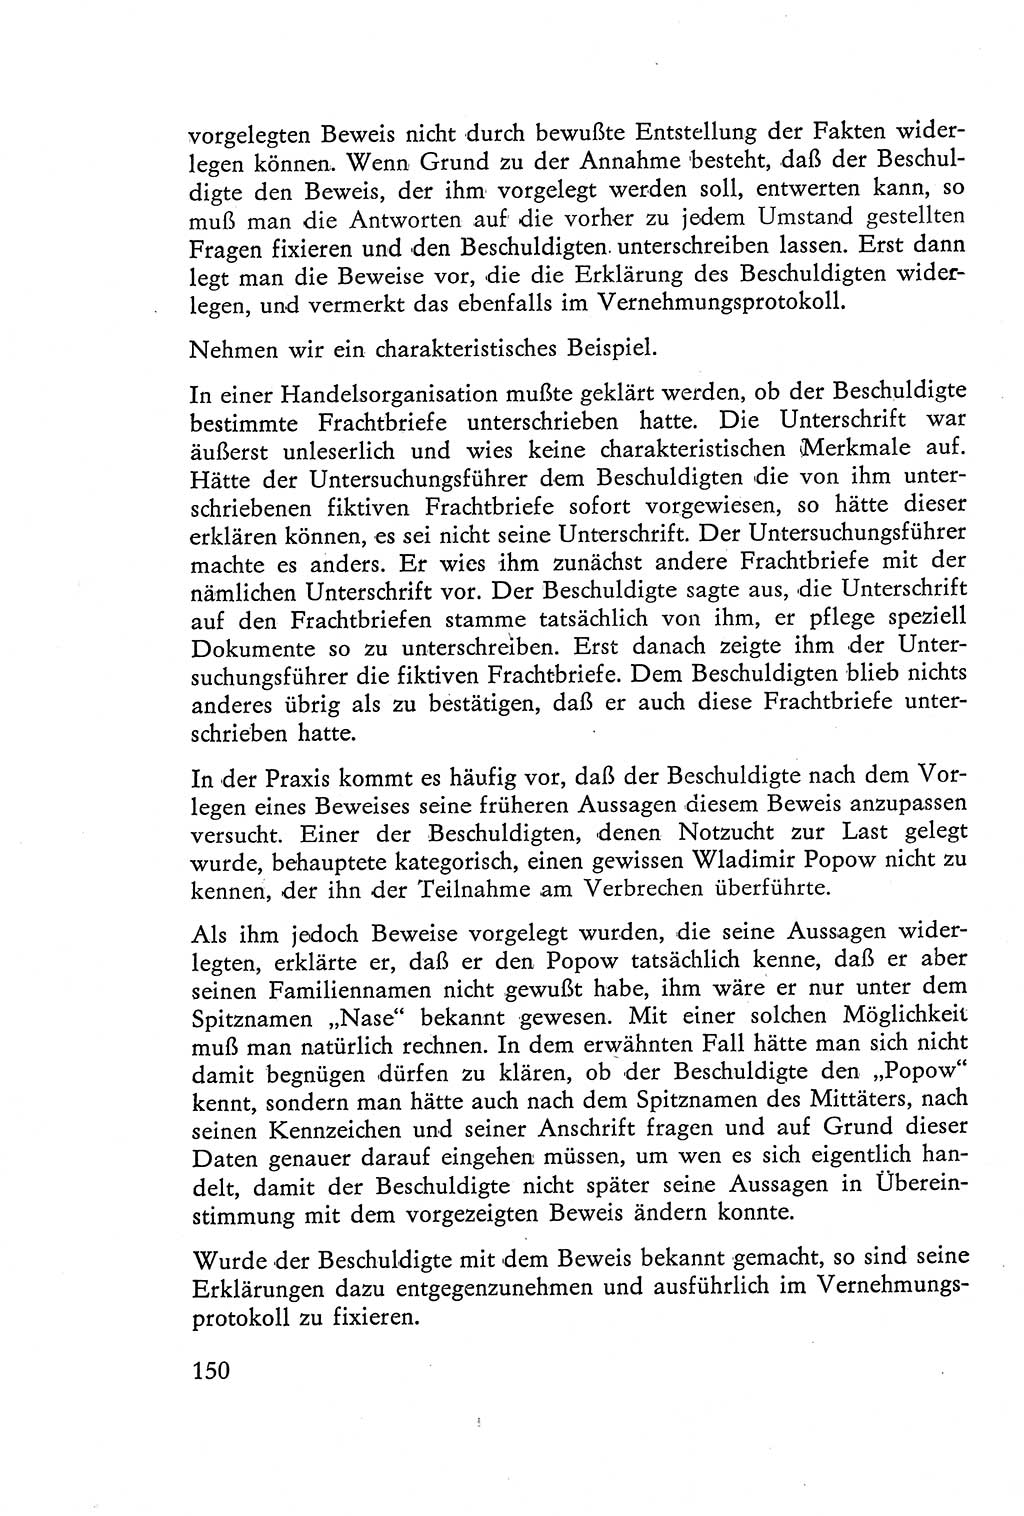 Die Vernehmung [Deutsche Demokratische Republik (DDR)] 1960, Seite 150 (Vern. DDR 1960, S. 150)